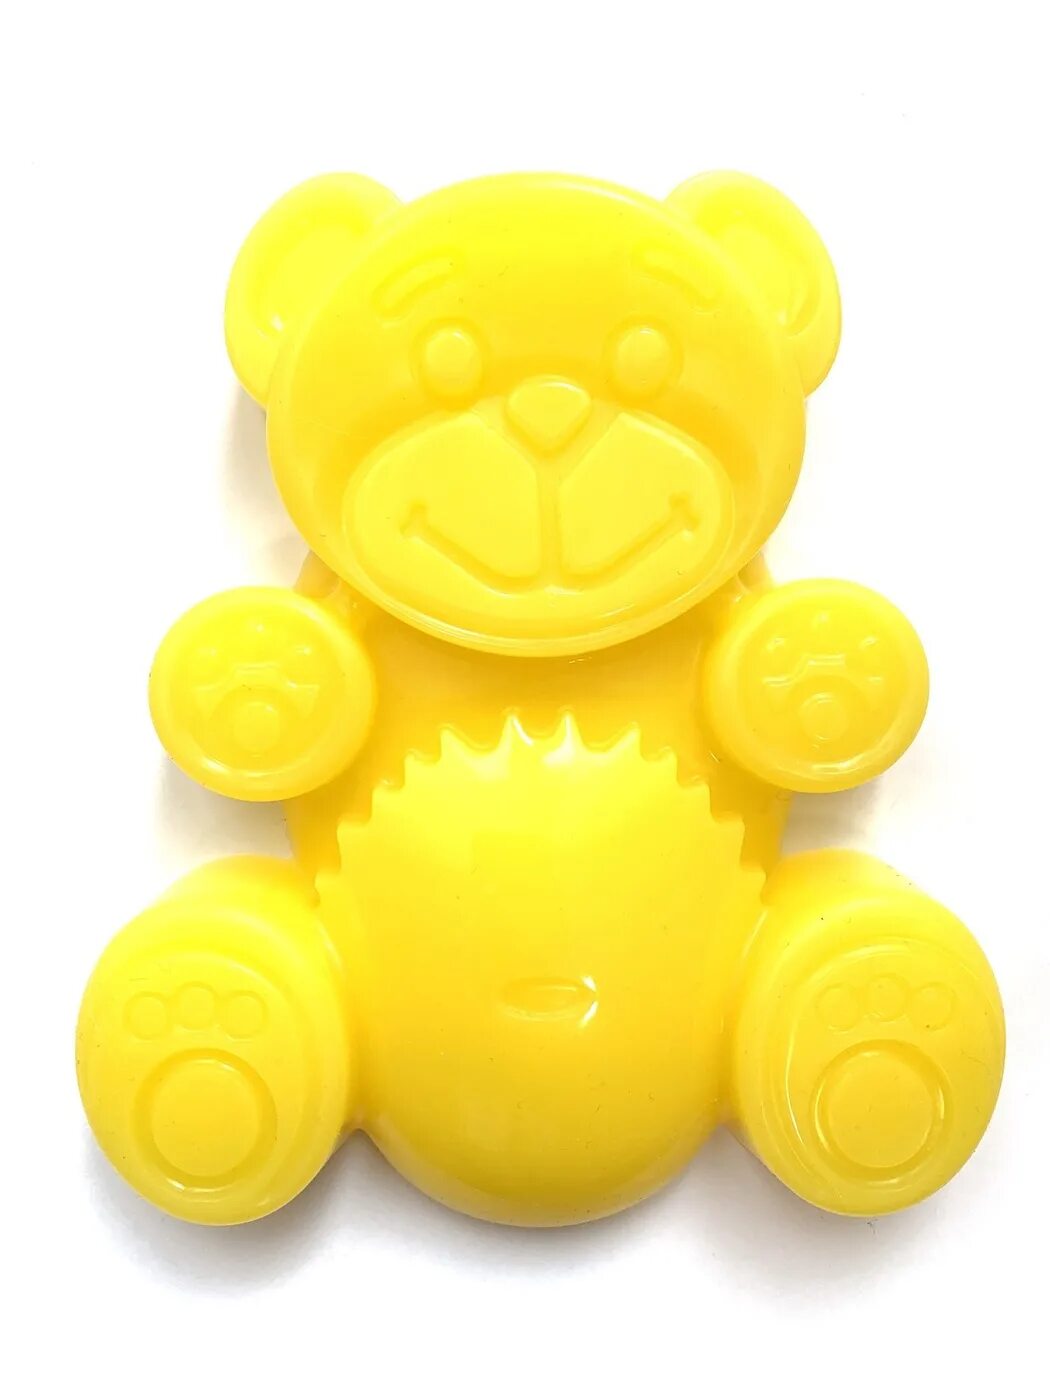 Включи желтобрюх. Жылтоглюх ЖЕЛЕЙНЫЙ медведь. ЖЕЛЕЙНЫЙ медведь жёлтобрюх. ЖЕЛЕЙНЫЙ медведь желтобрюх игрушка. Медведь Валера и желтобрюх.